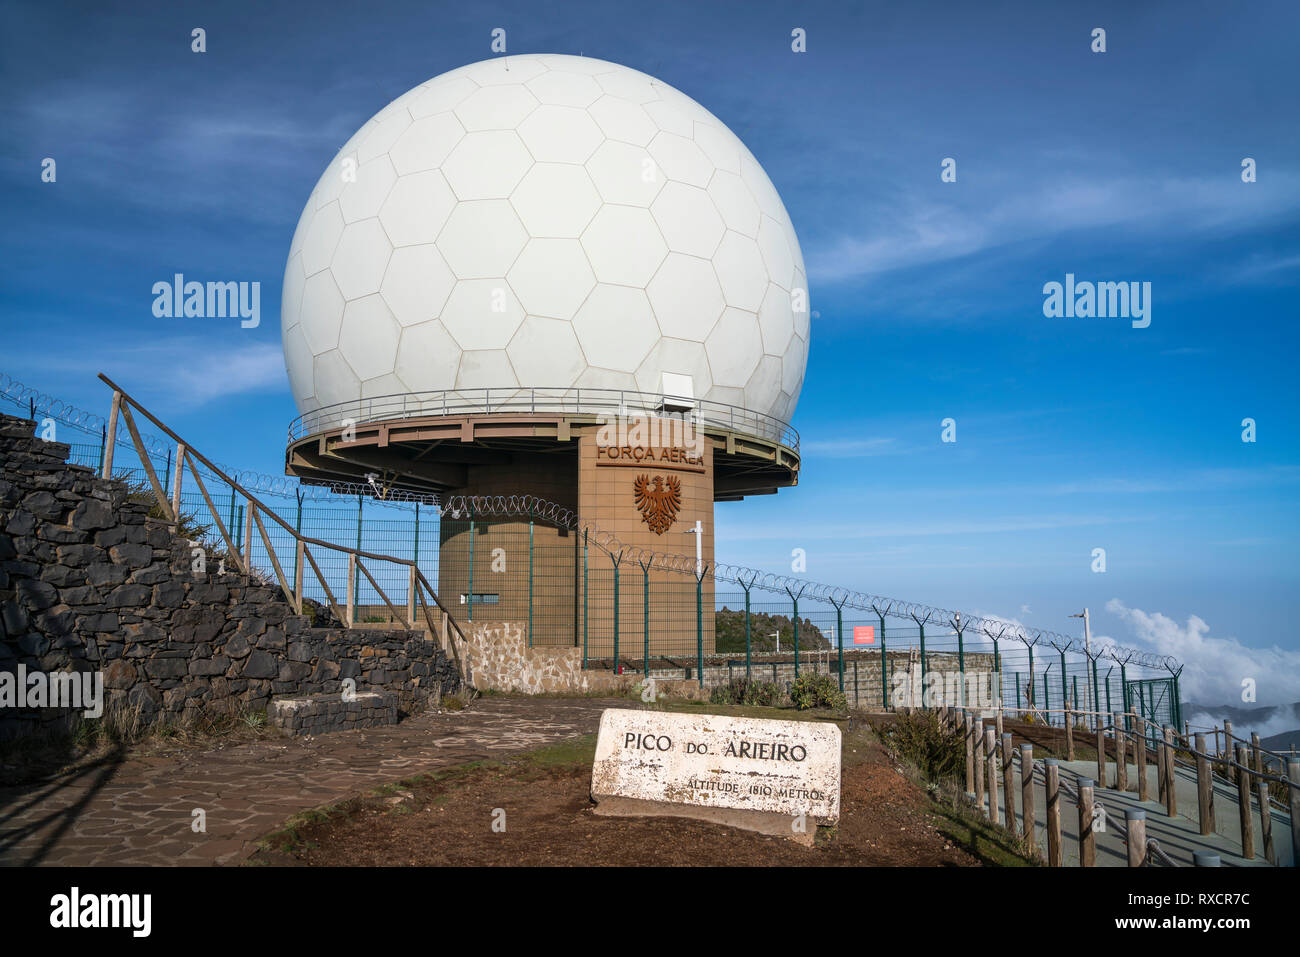 Radarstation  auf dem Berg Pico Arieiro, Madeira, Portugal, Europa |  Radar station on mount  Pico Arieiro,  Madeira, Portugal, Europe Stock Photo